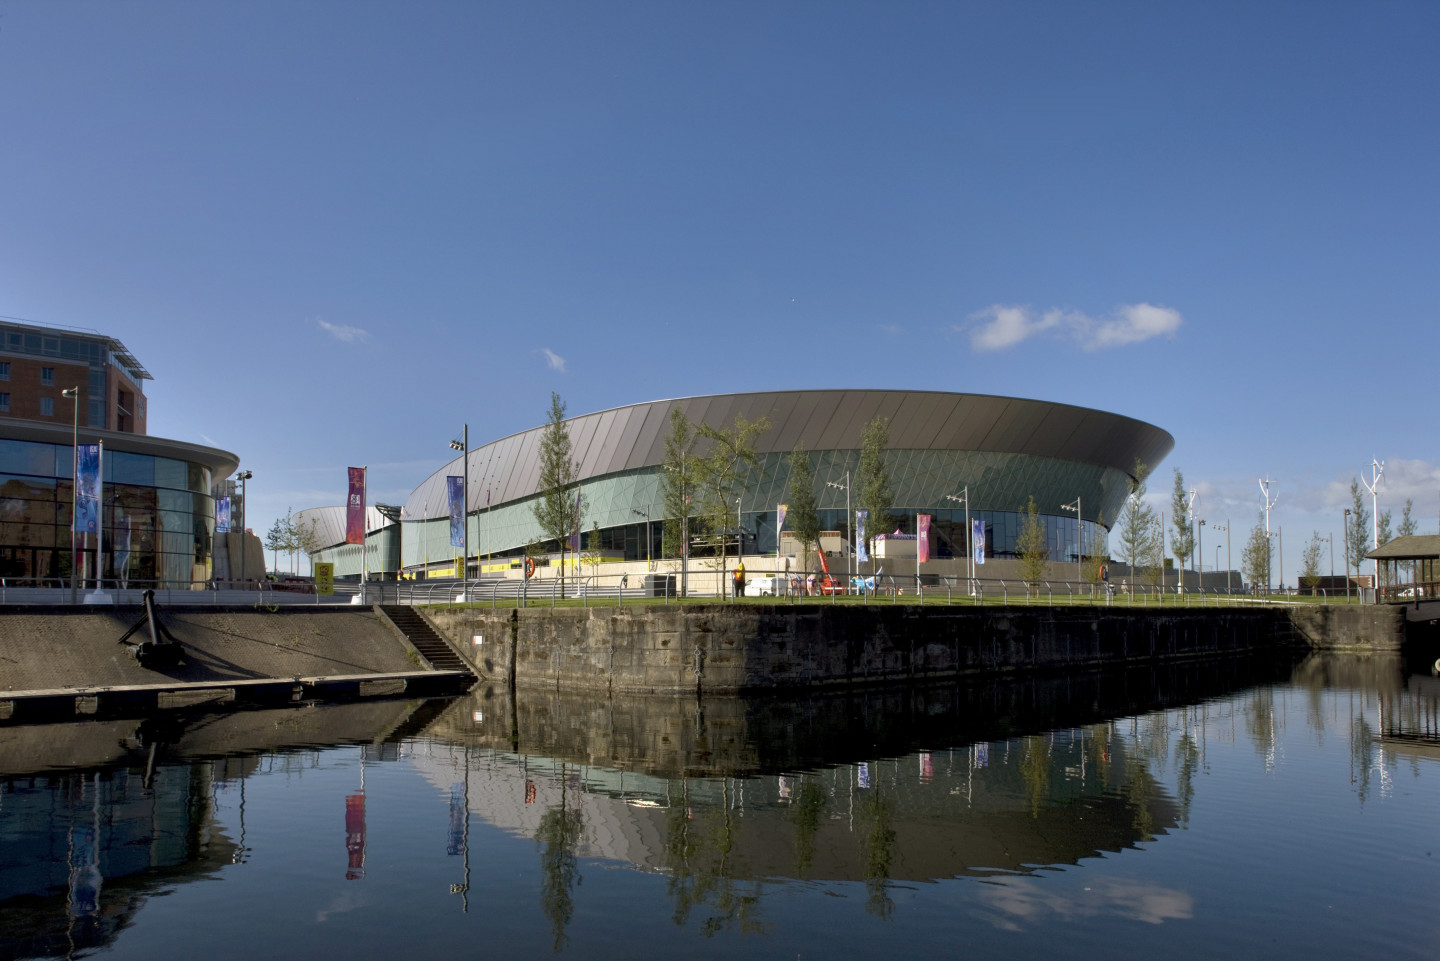 Liverpool Arena & Convention Centre © Morley von Sternberg